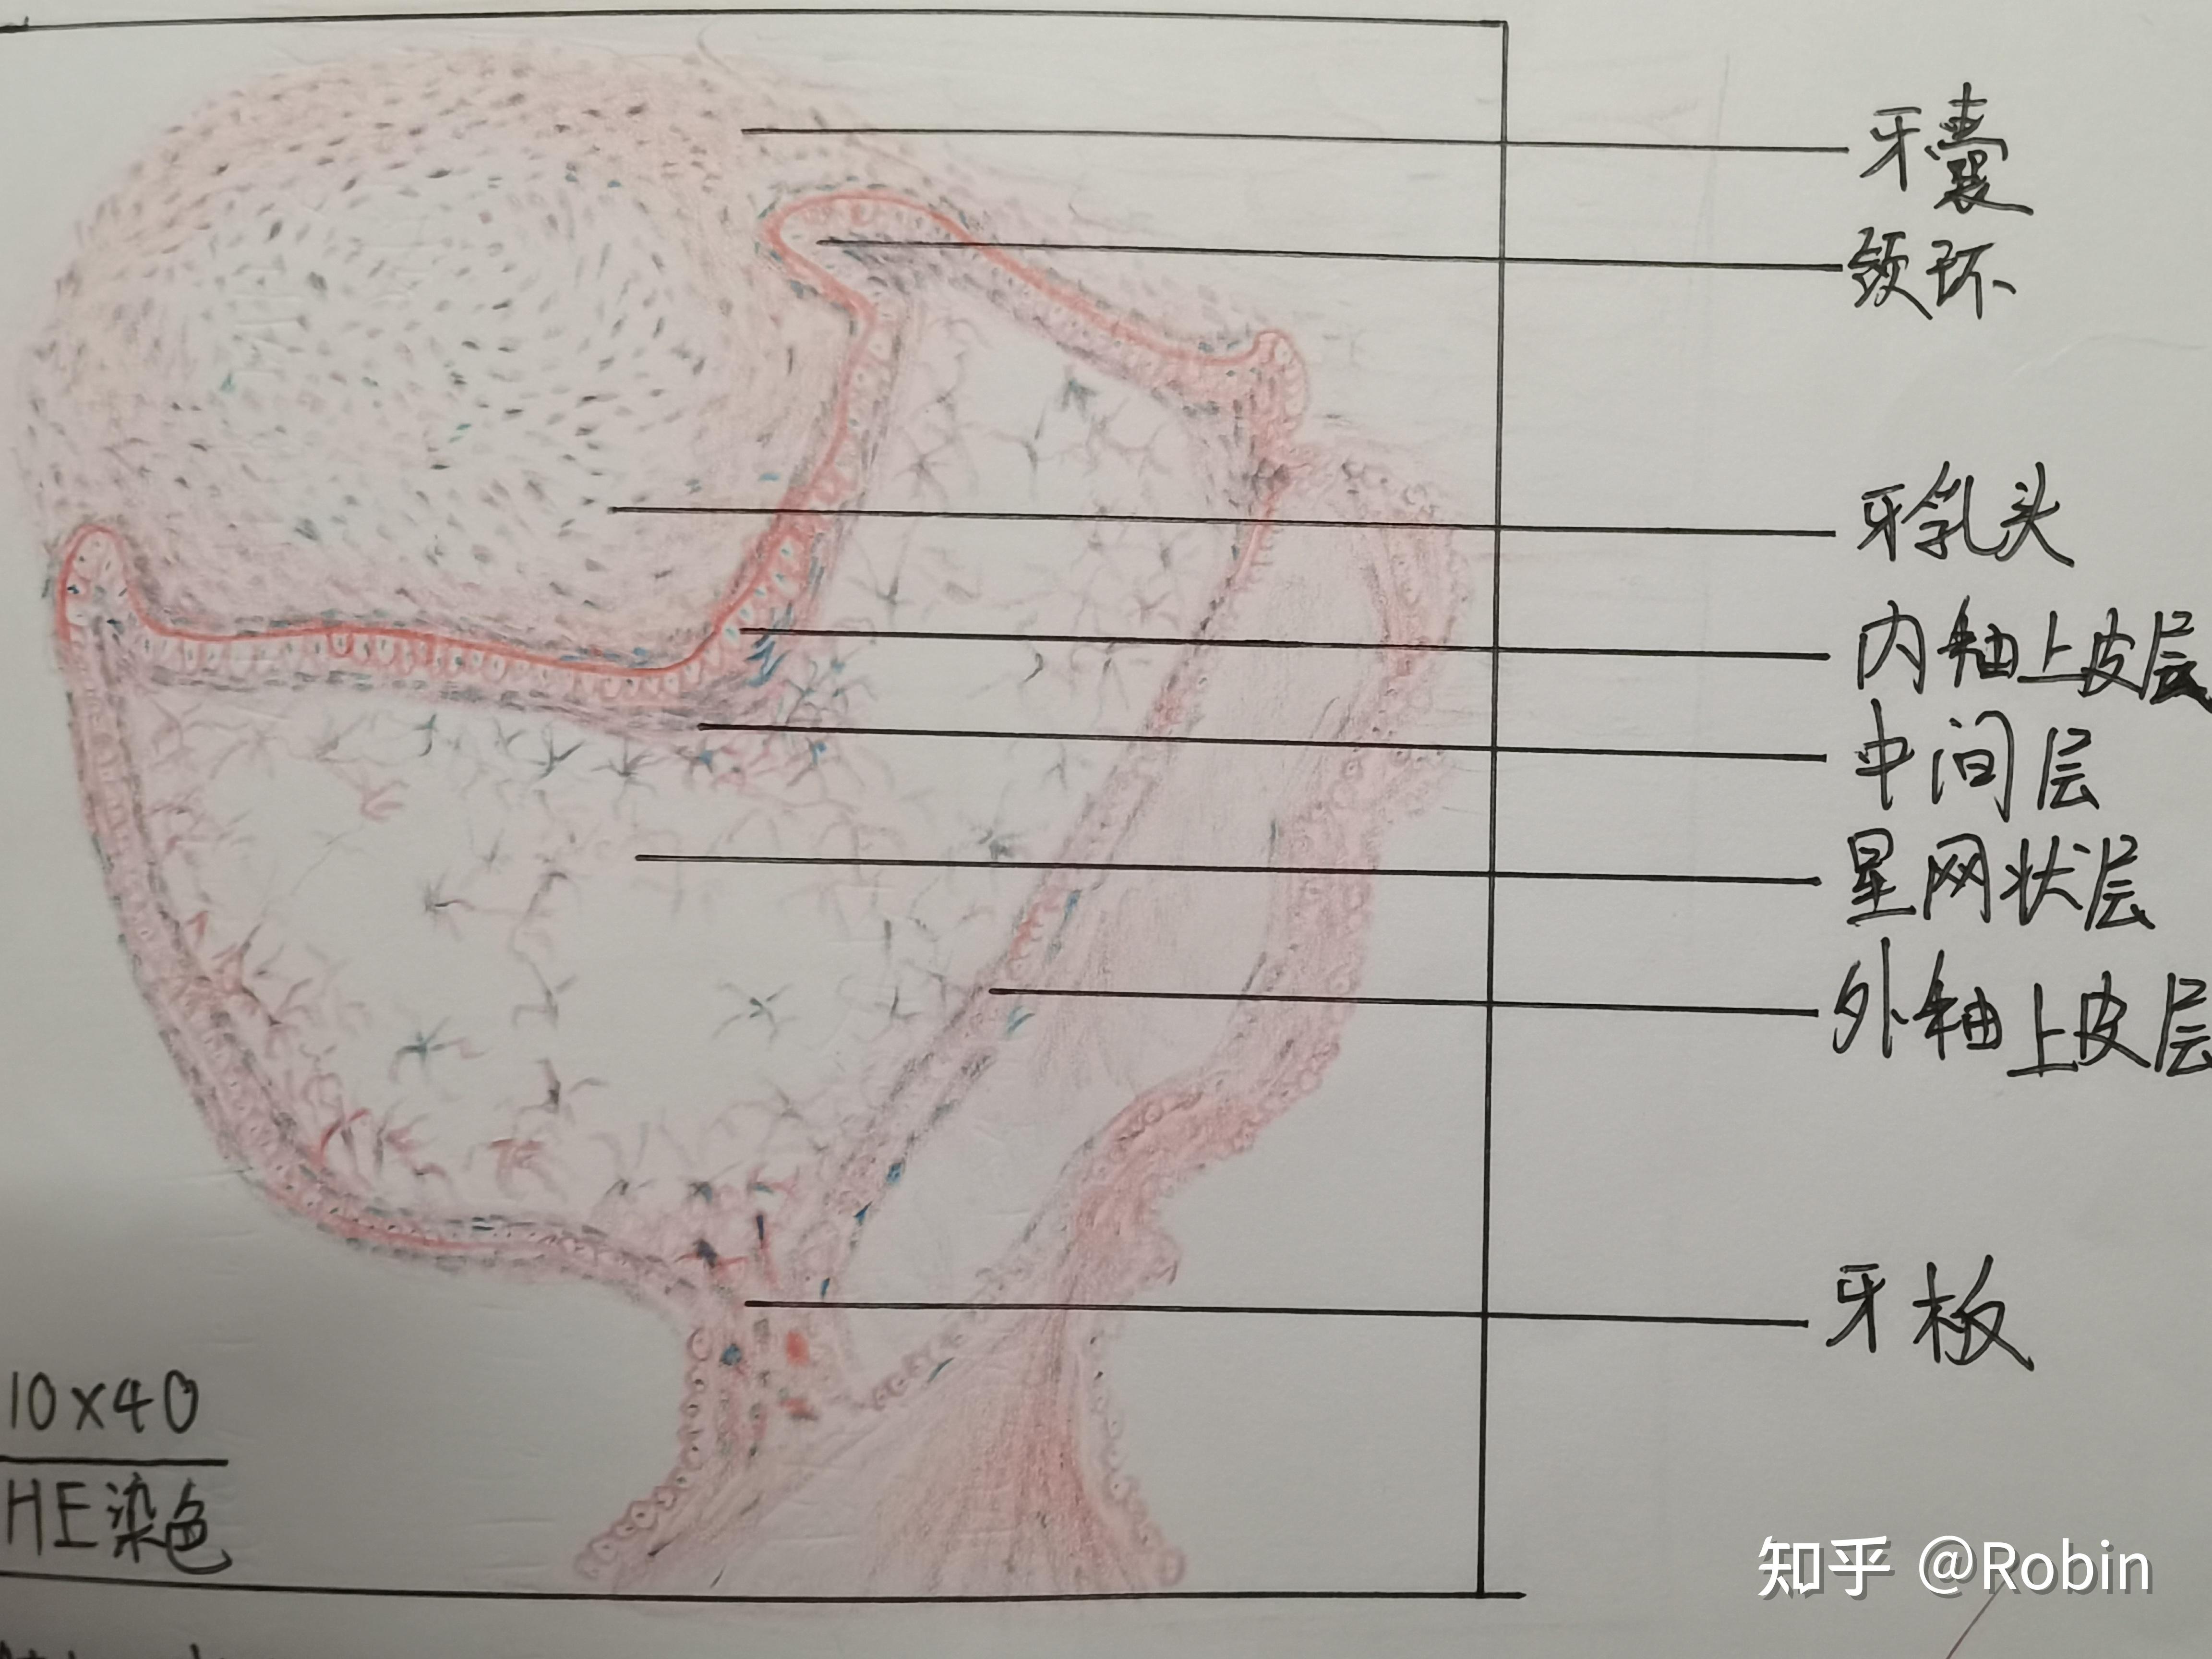 口腔组织胚胎学切片绘图 